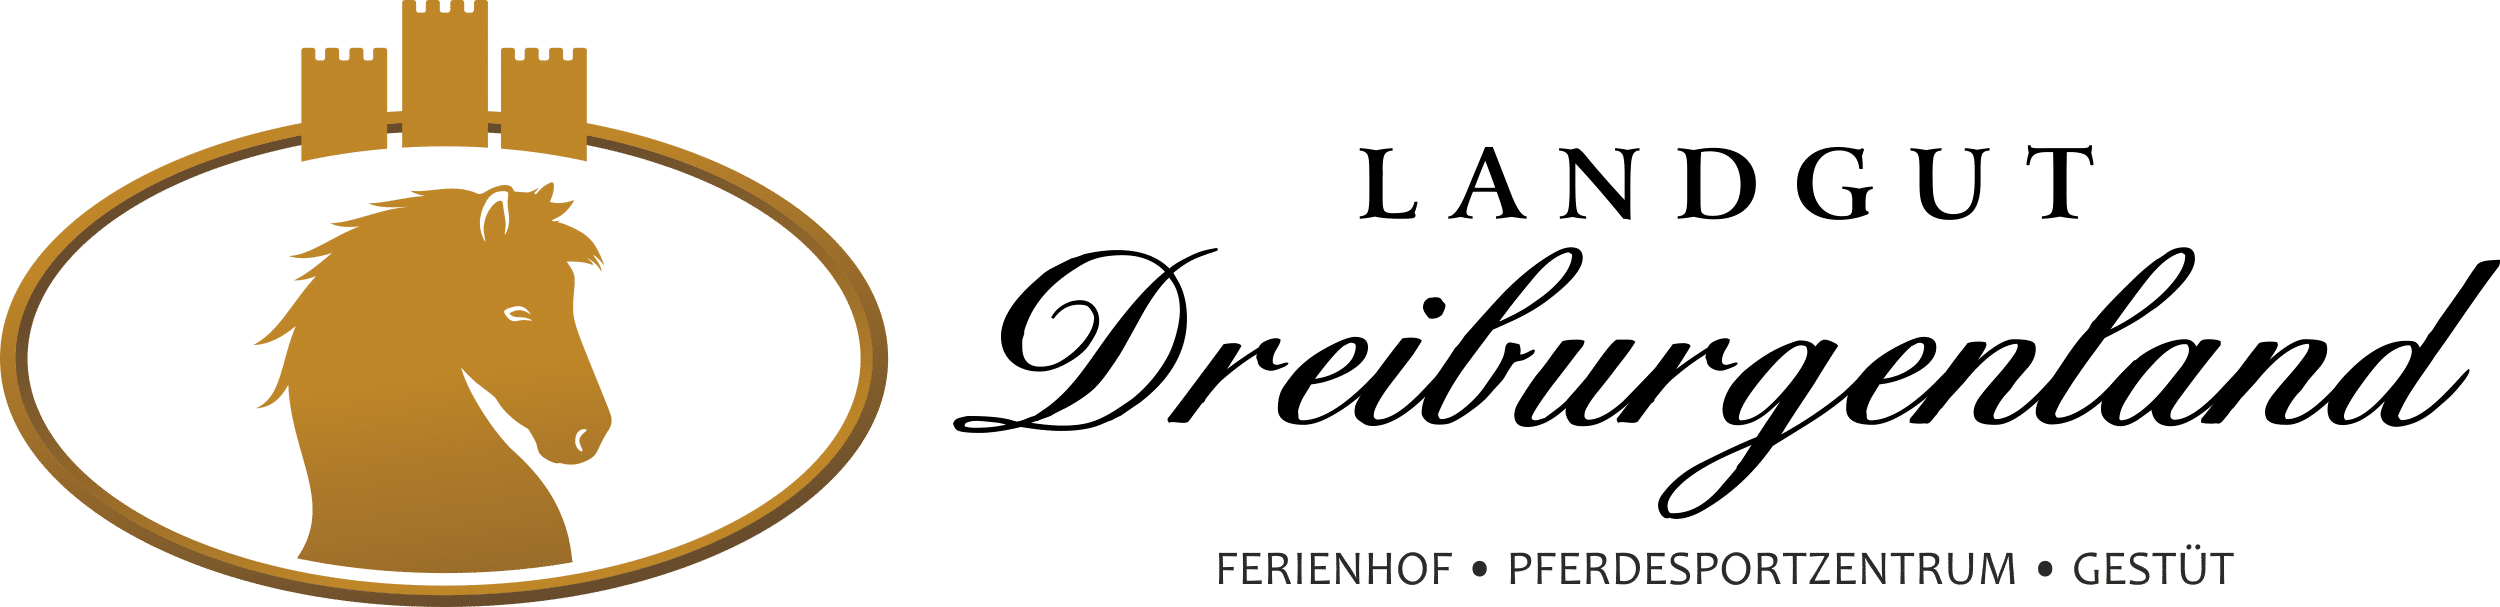 Ferienhof, Pferdesportzentrum und Gestüt "Landgut Dreiburgenland" | Reiturlaub für Erwachsene - Landgut-Dreiburgenland